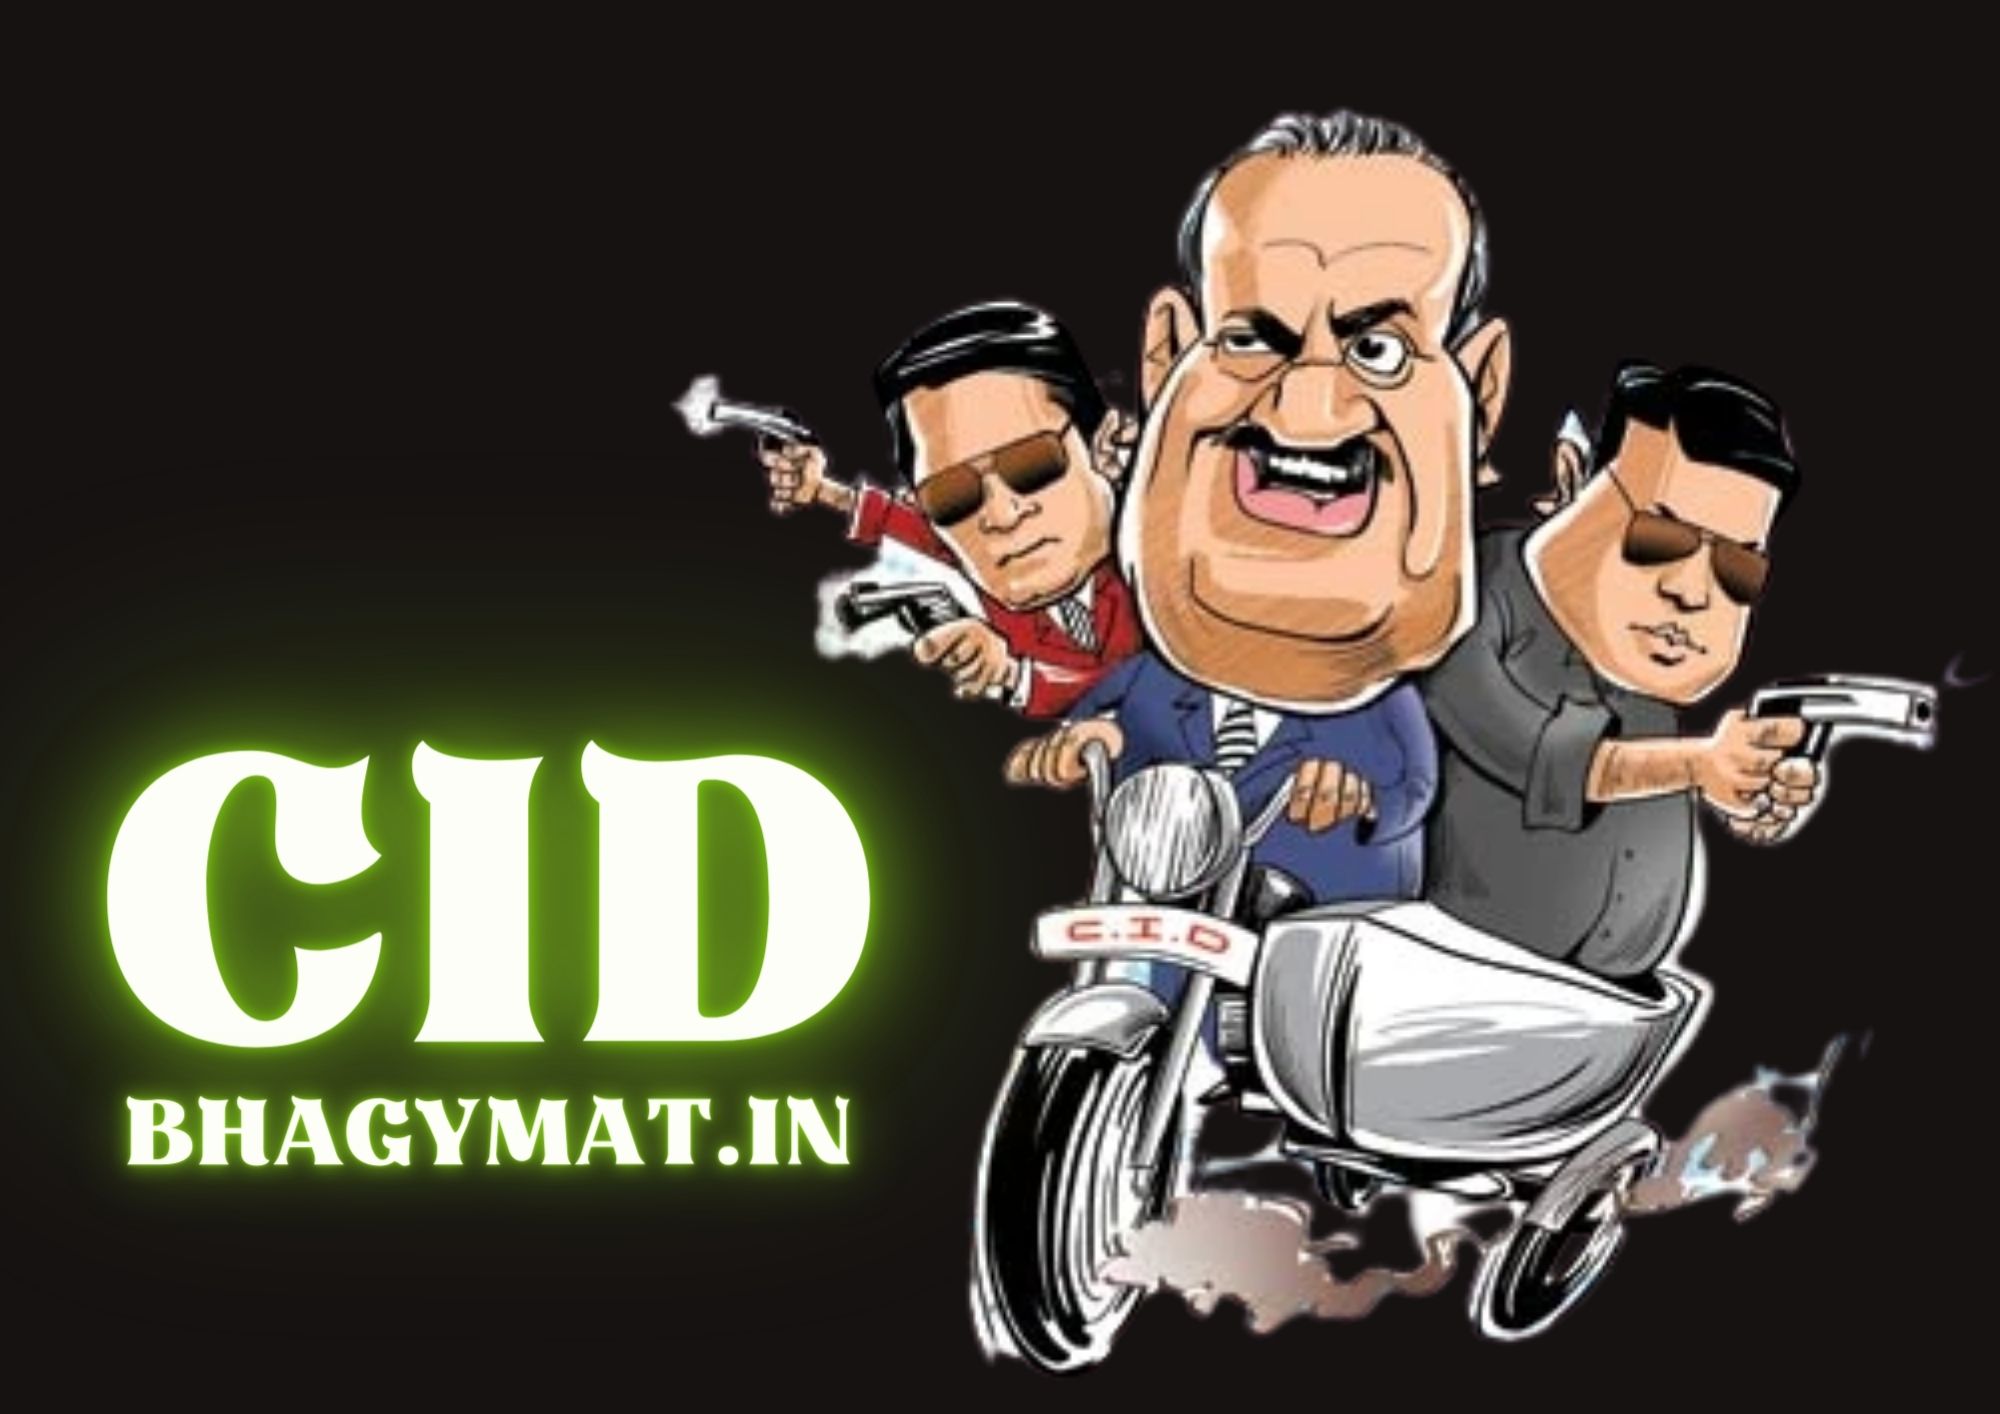 सीआईडी का फुल फॉर्म क्या है? (CID Ka Full Form Kya Hota Hai) - Full Form Of CID In Hindi - CID Ka Full Form Kya Hai In Hindi